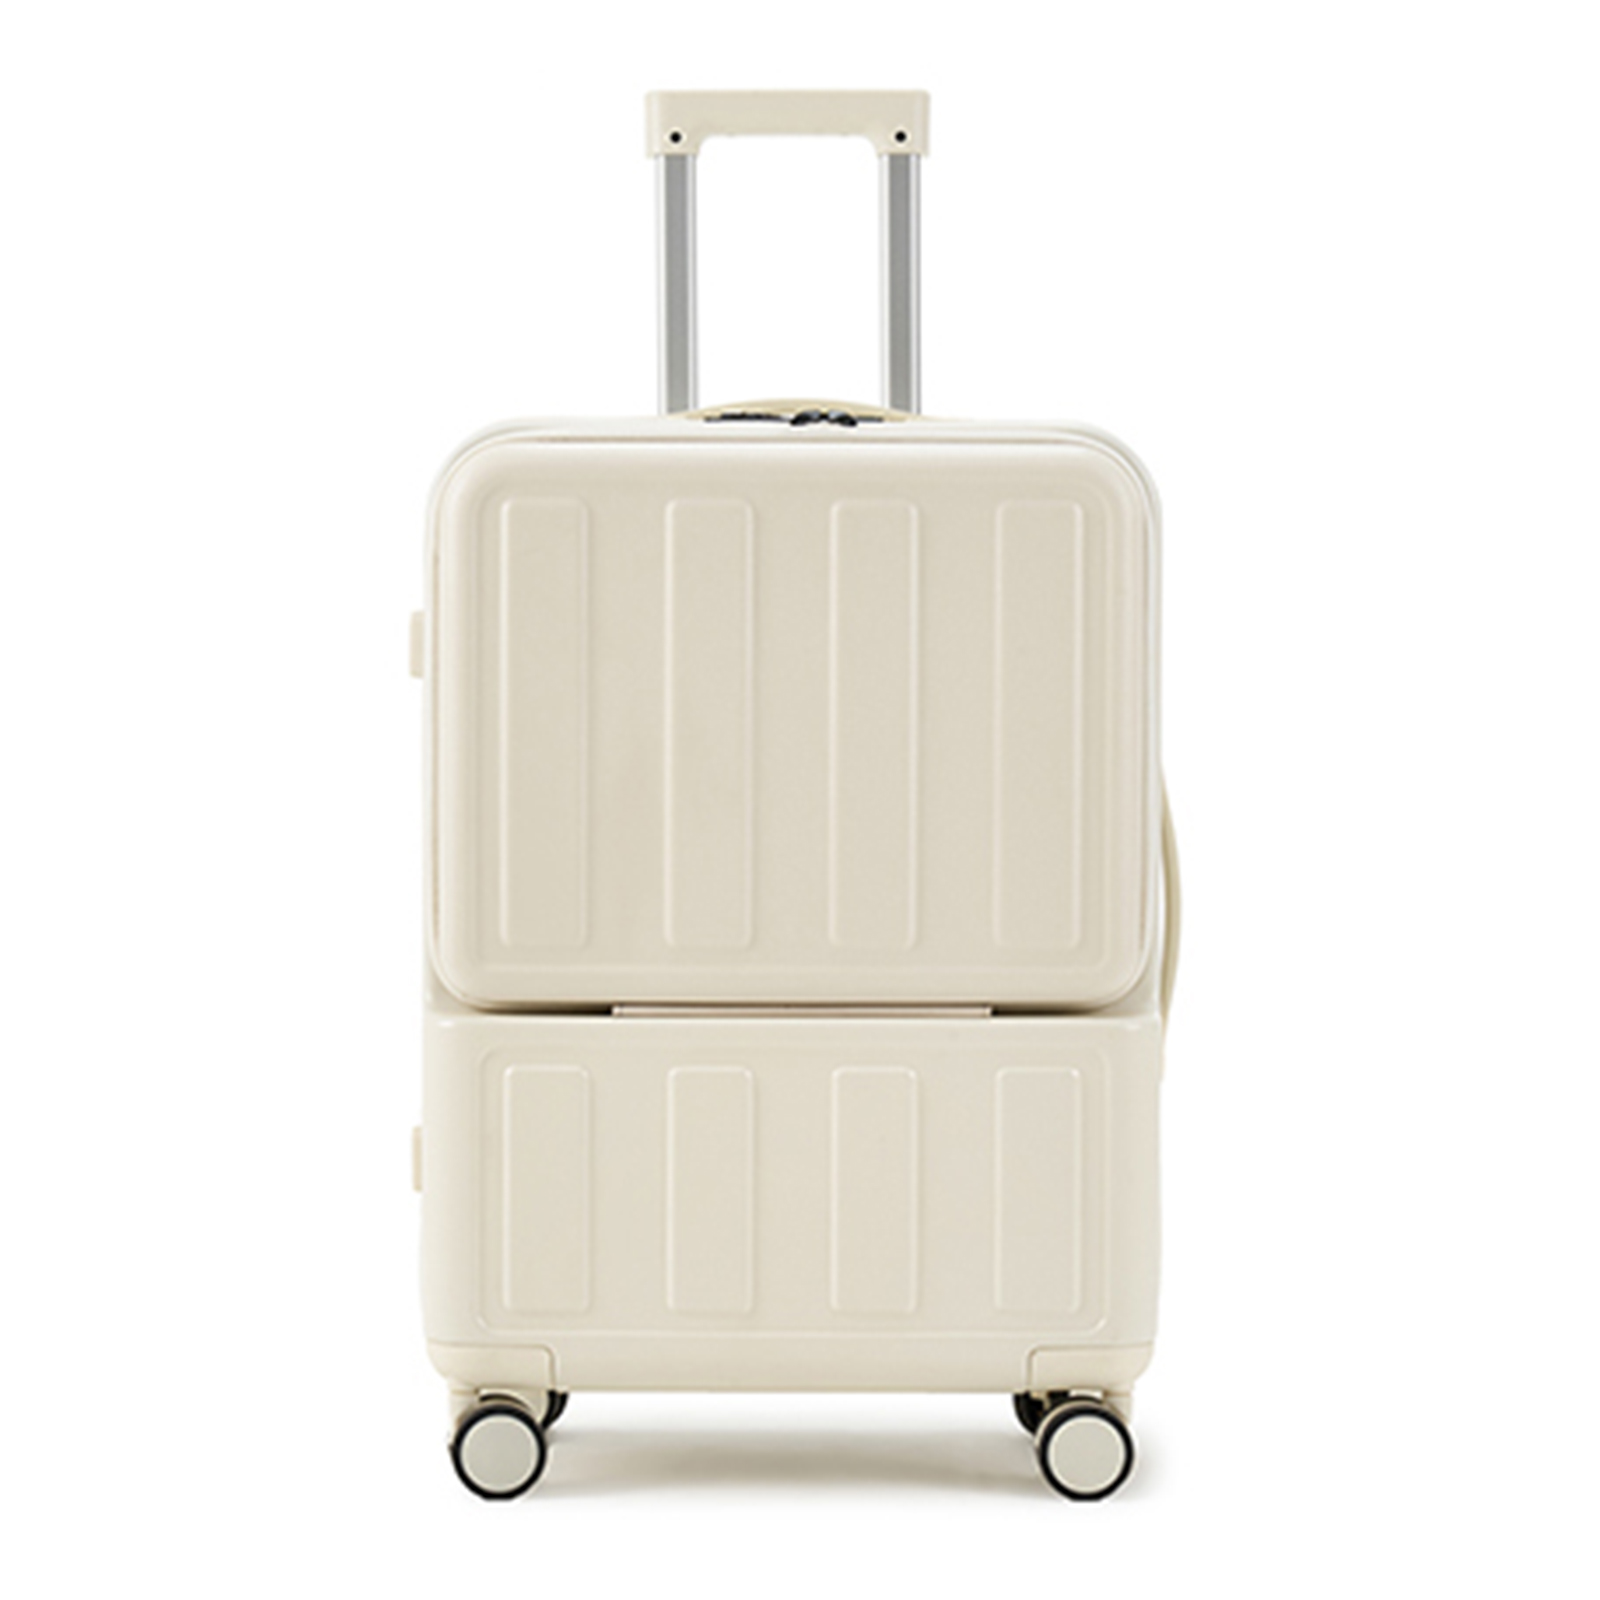 スーツケース フロントオープン 前開き USBポート付き 機内持込 キャリーケース キャリーバッグ Sサイズ 5カラー 8輪 1-3日用 泊まる 軽量  大容量 TSAローク